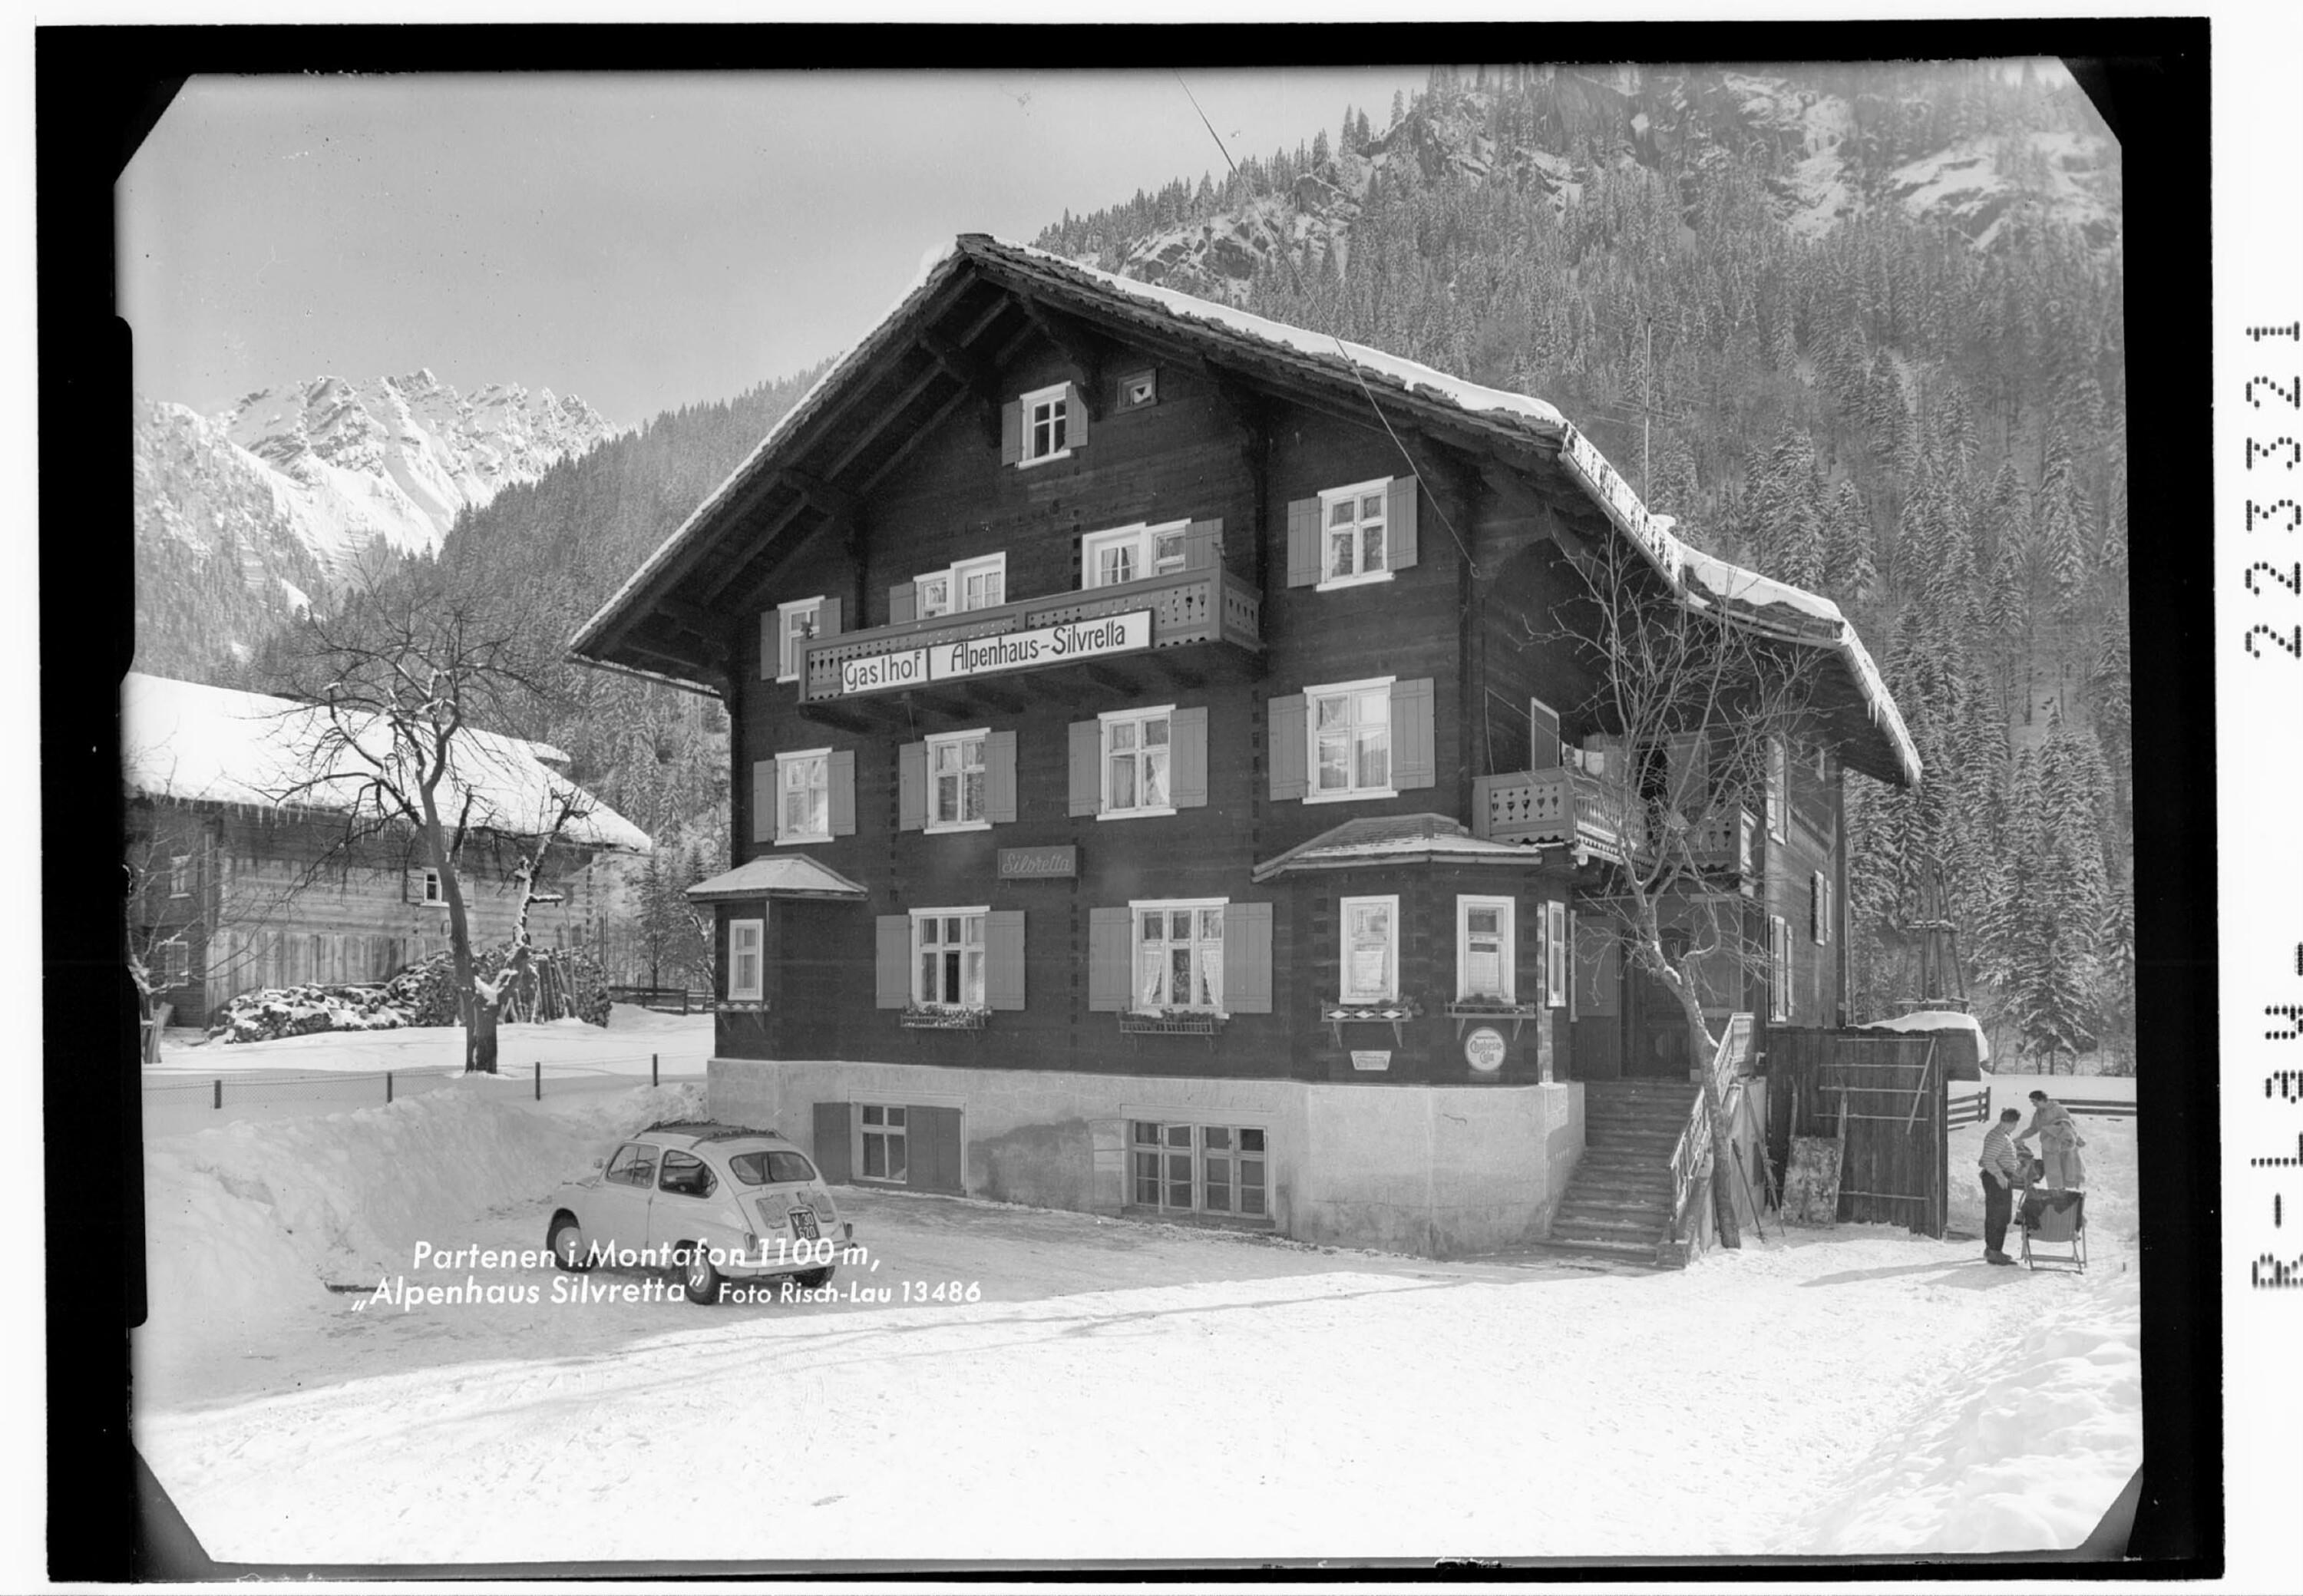 Partenen im Montafon 1100 m / Alpenhaus Silvretta></div>


    <hr>
    <div class=